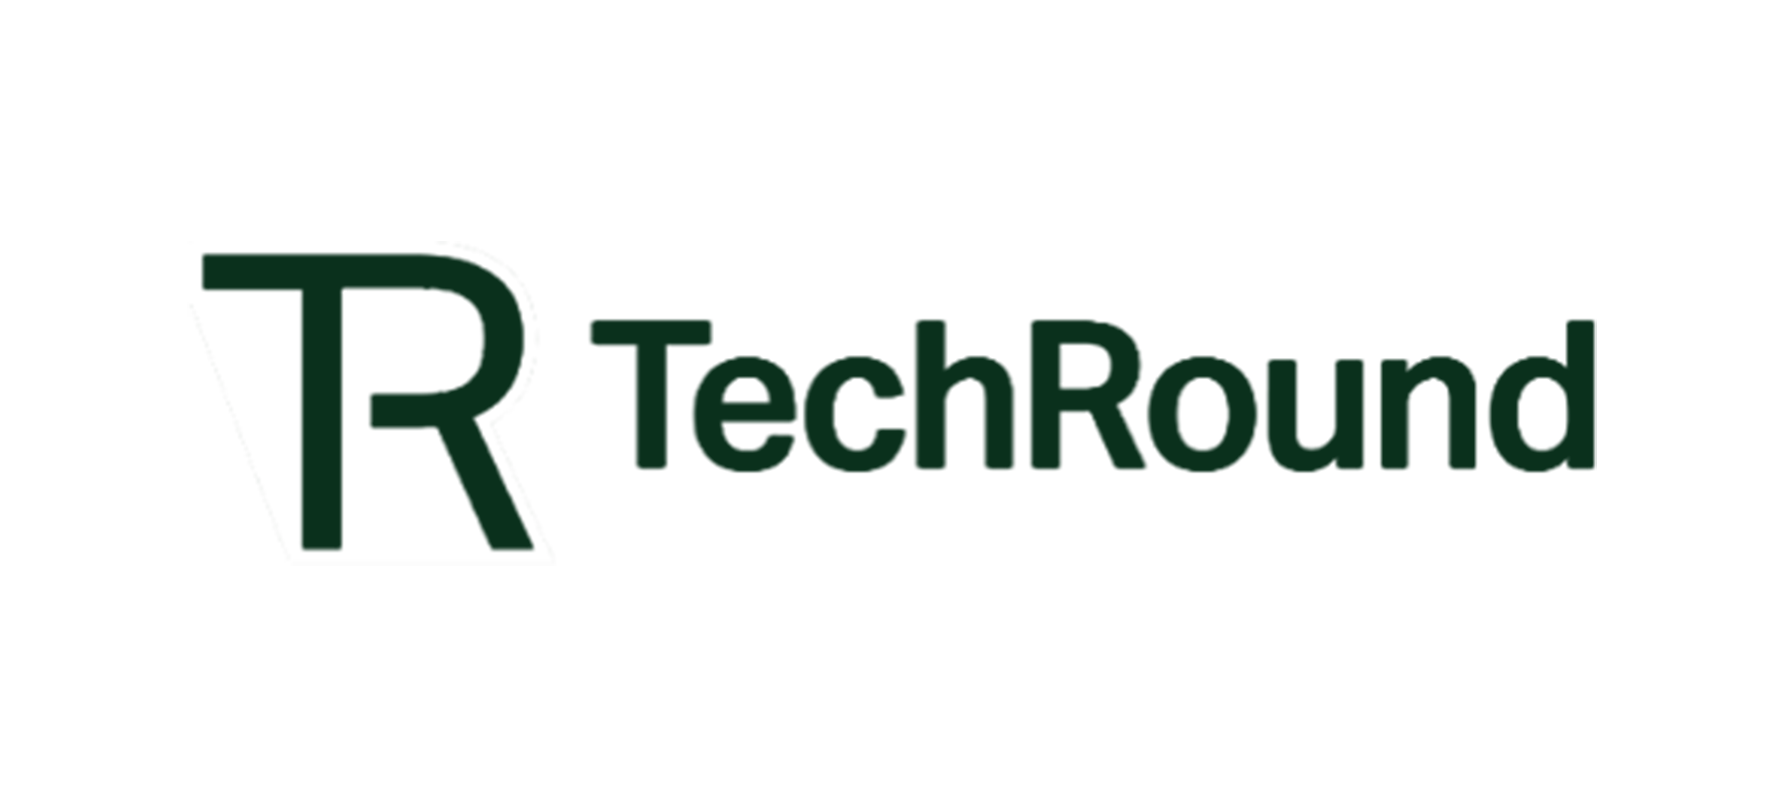 Techround logo